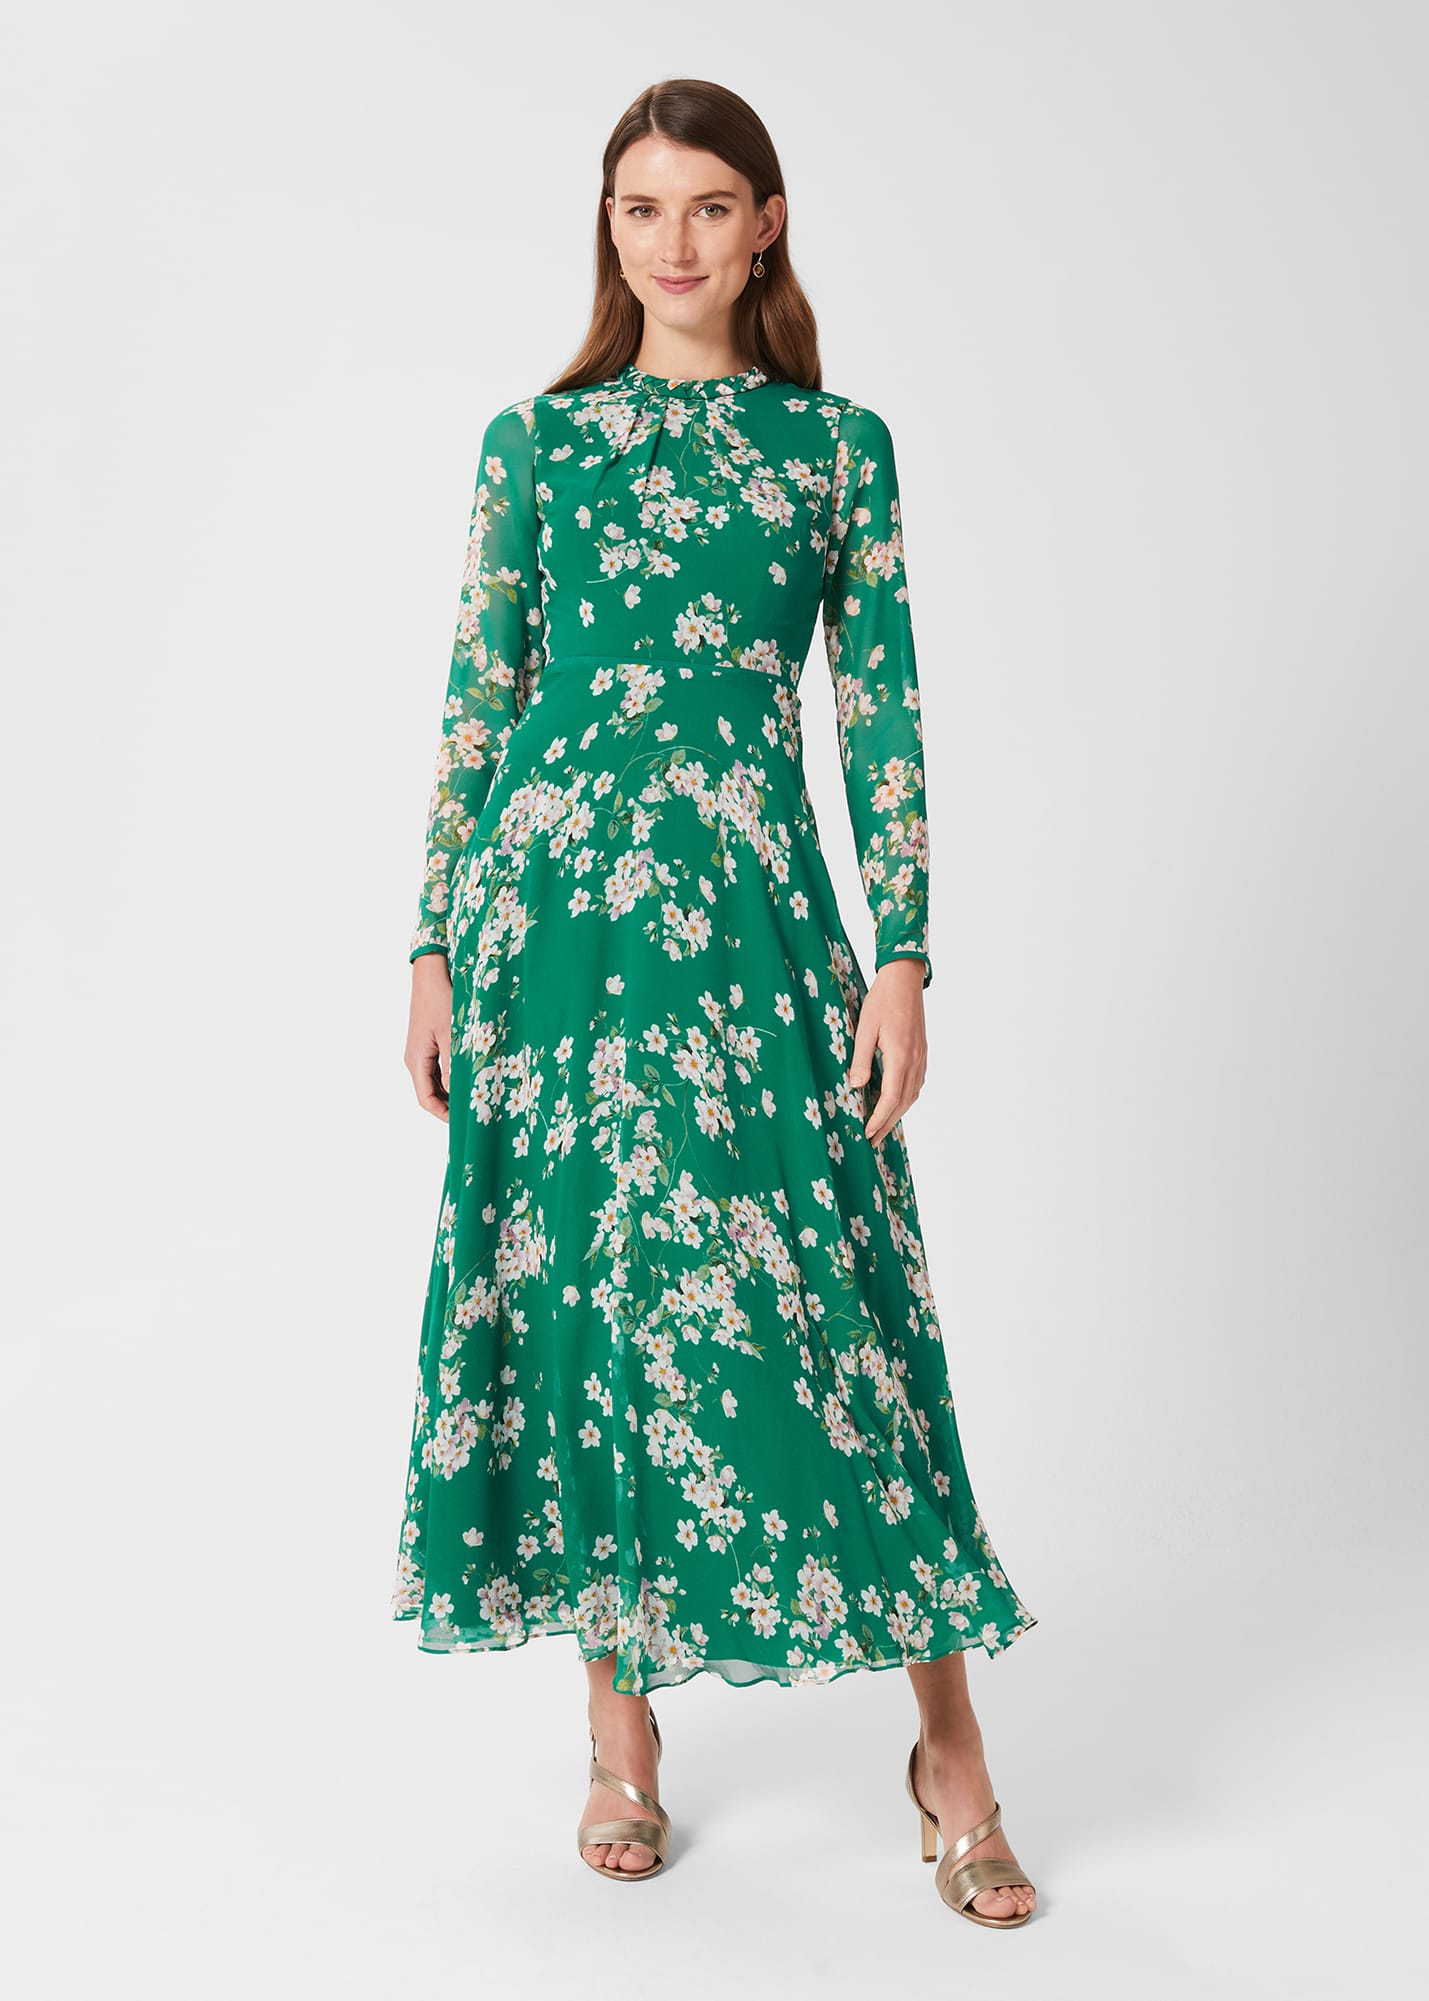 Hobbs Women's Rosabelle Silk Floral Dress - Green Multi